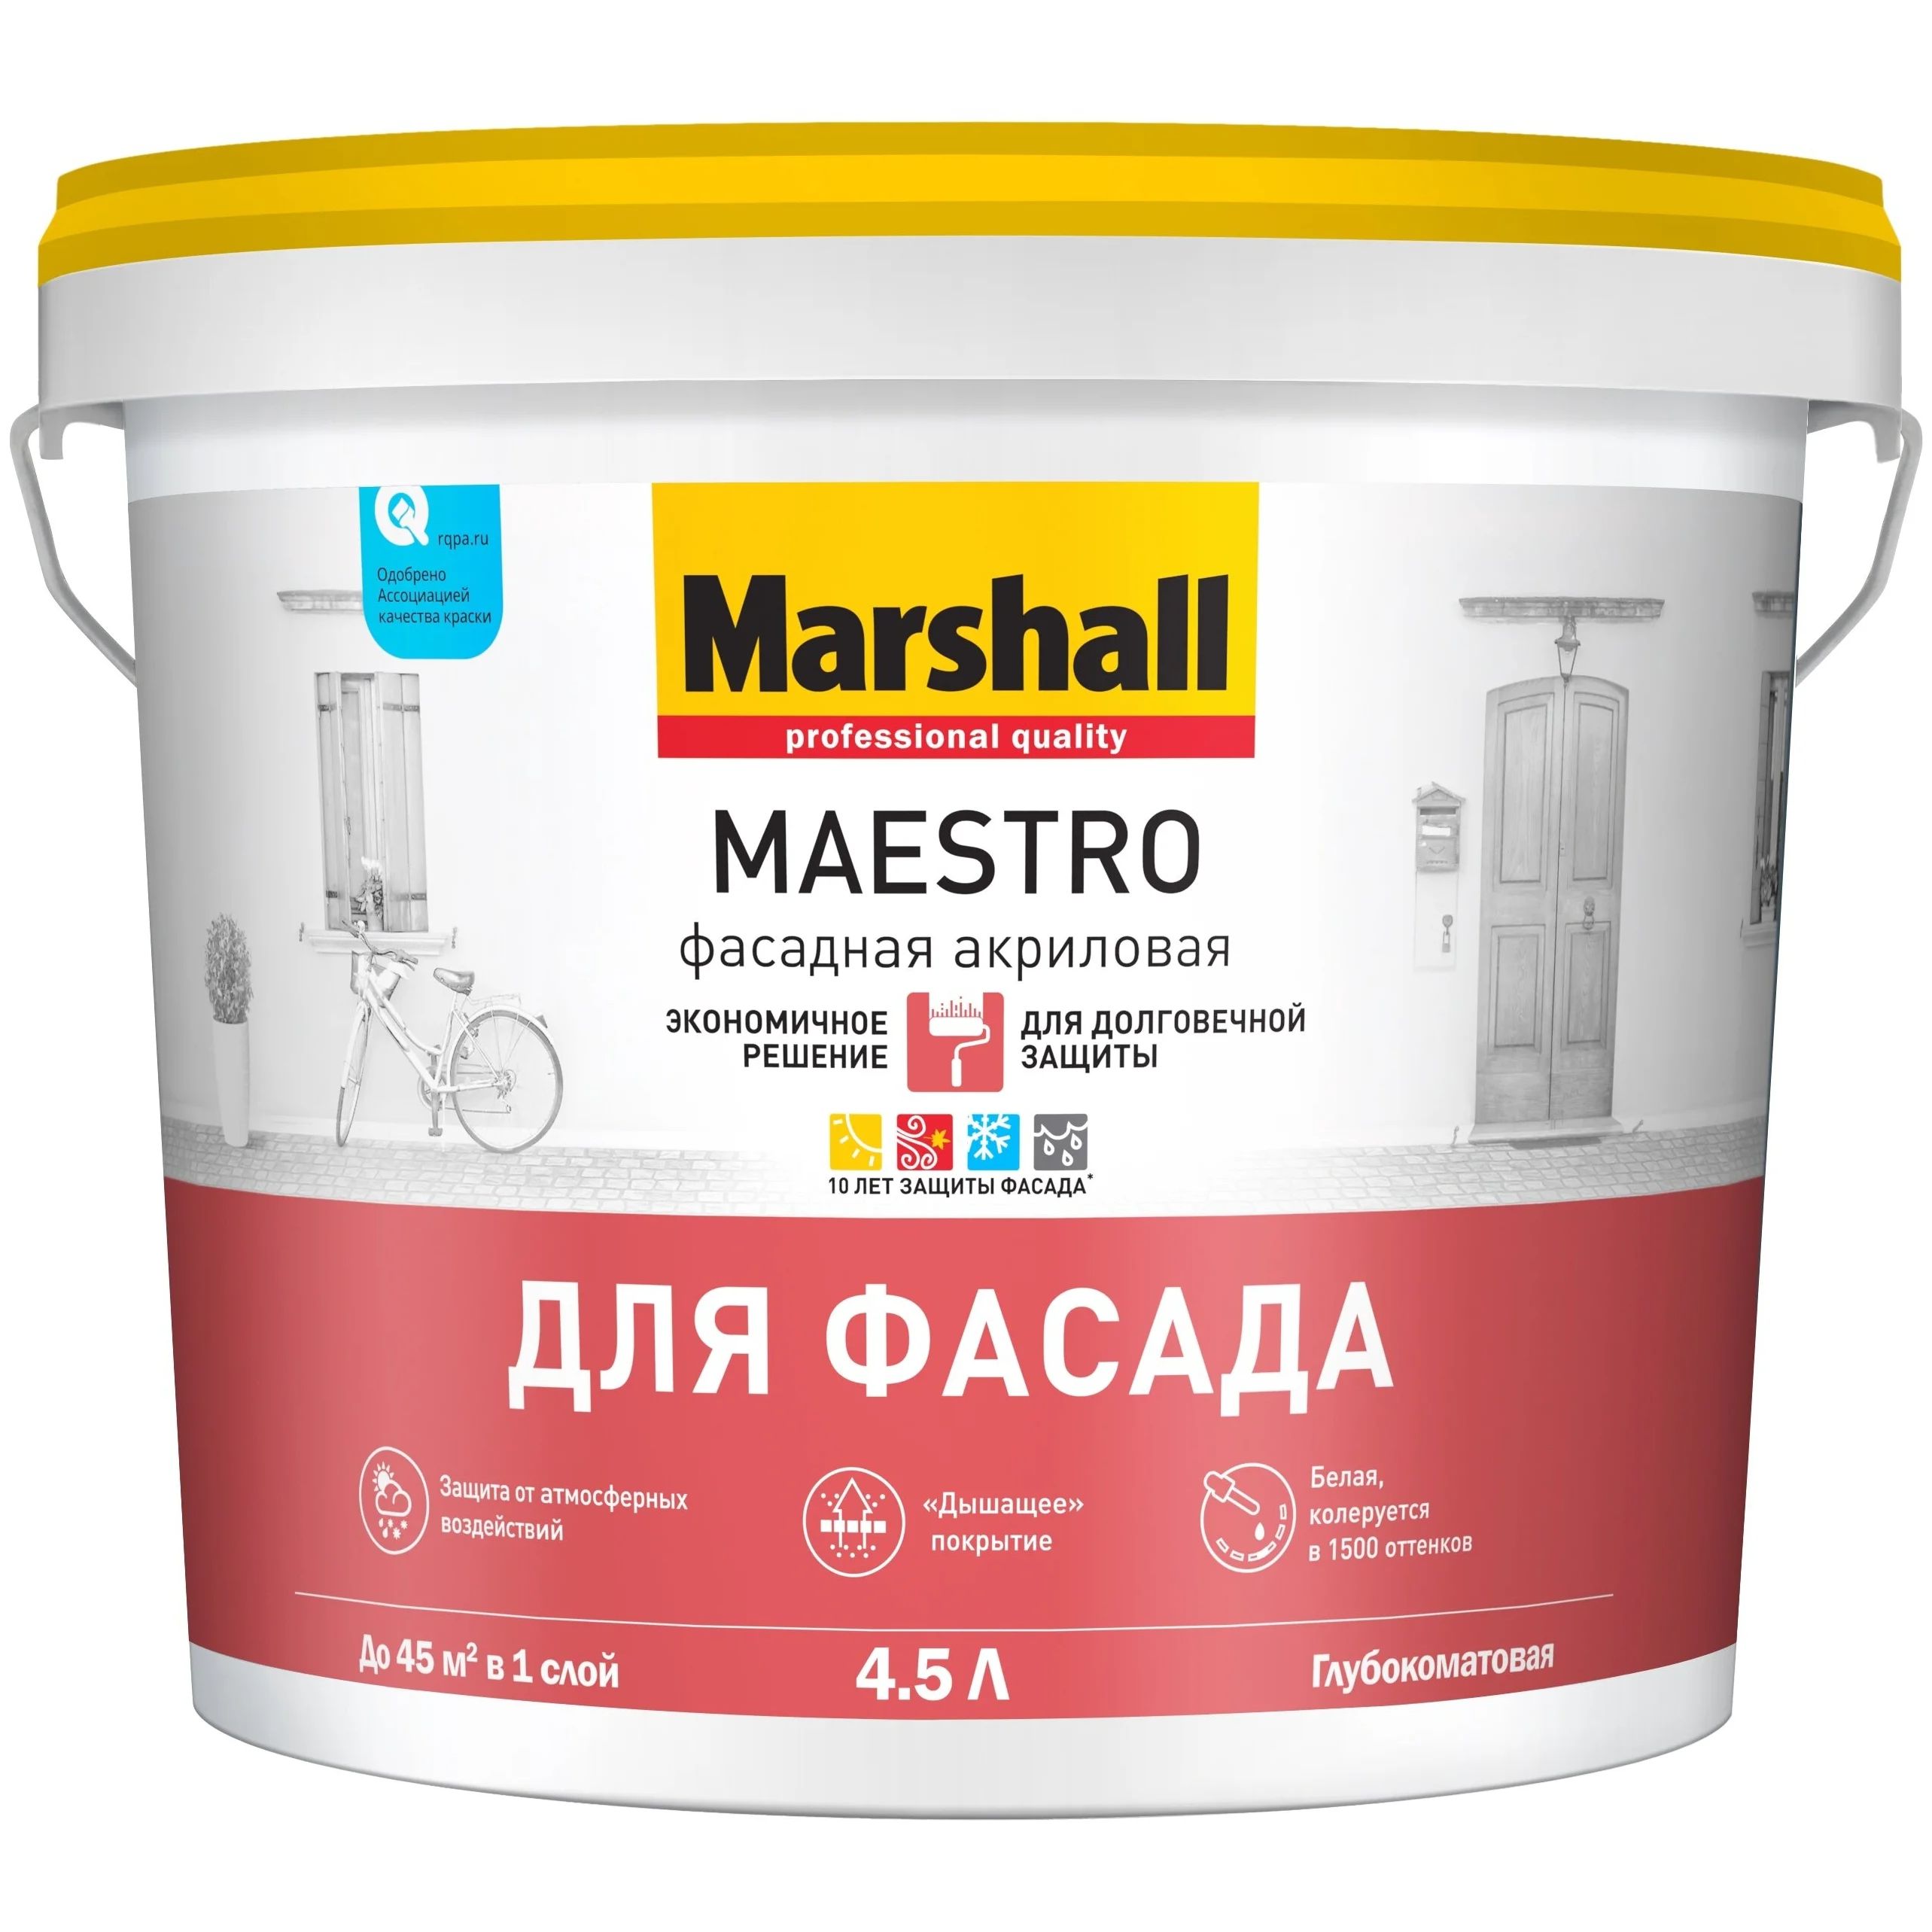 Краска Marshall Maestro фасадная акриловая, глубокоматовая, BC, 4,5 л краска marshall export 2 латексная глубокоматовая bc 9 л